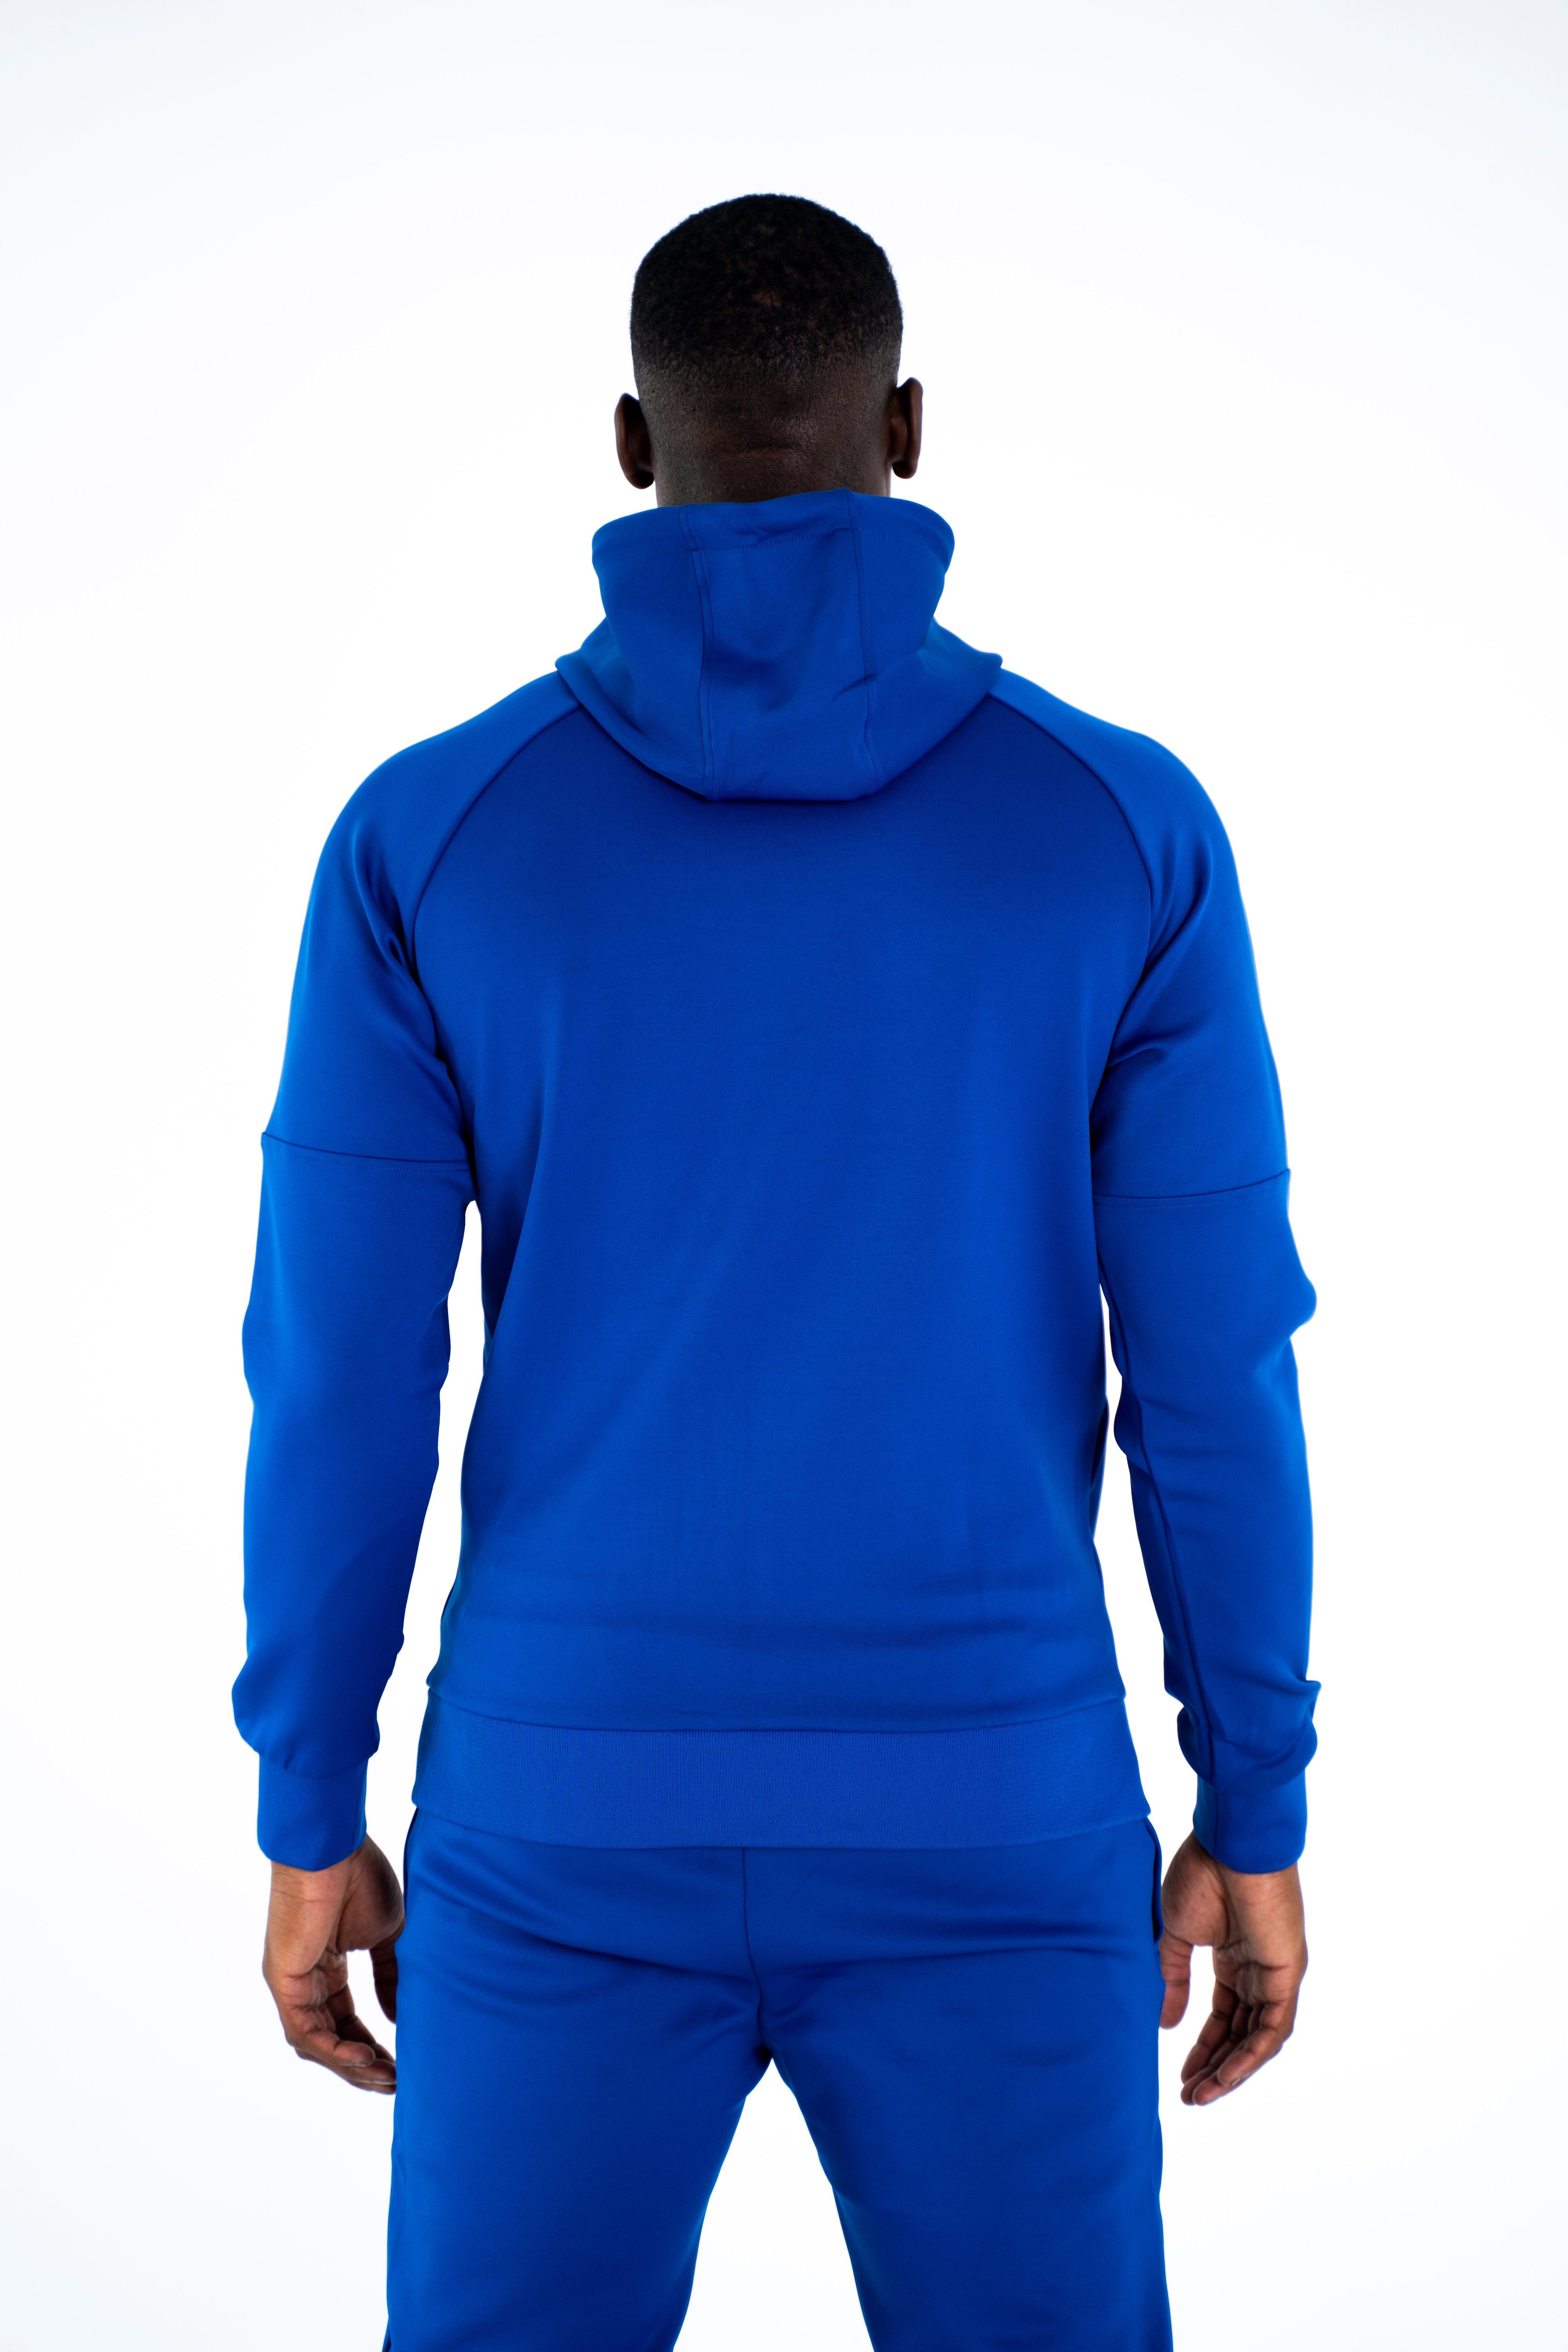 und Modern Hoodie Trainingsjacke mit und Kapuze für Universum Trainingsjacke blau Fitness Freizeit Schulterschnitt, Sportwear Fit Sport,